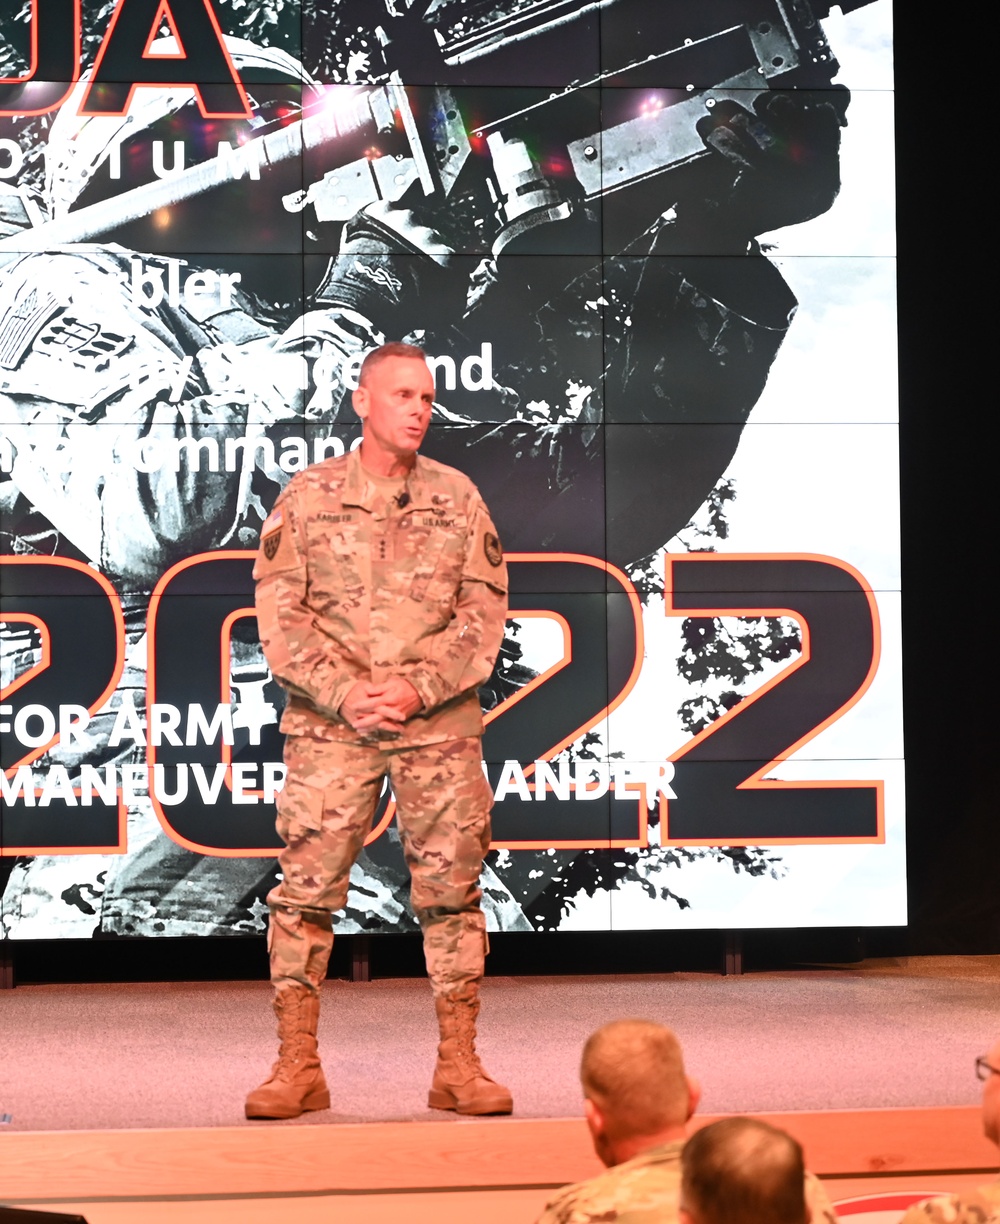 Lt. Gen. Daniel L. Karbler speaks at the ADA Symposium 2030 - Enabling the Maneuver Commander